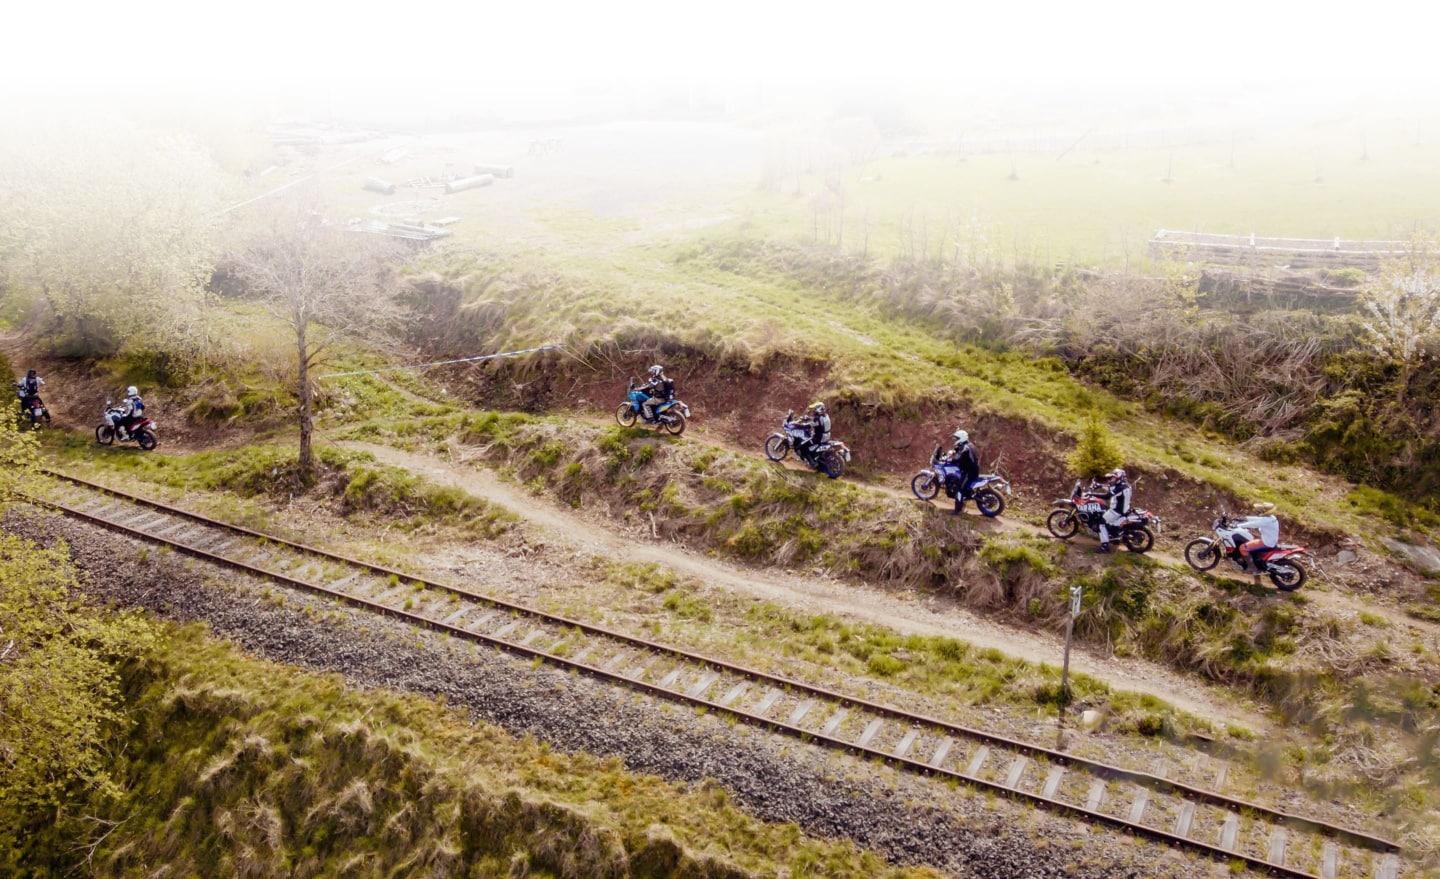 Mehrere Motorradfahrer auf dem Trainingsgelände neben Bahnschiene